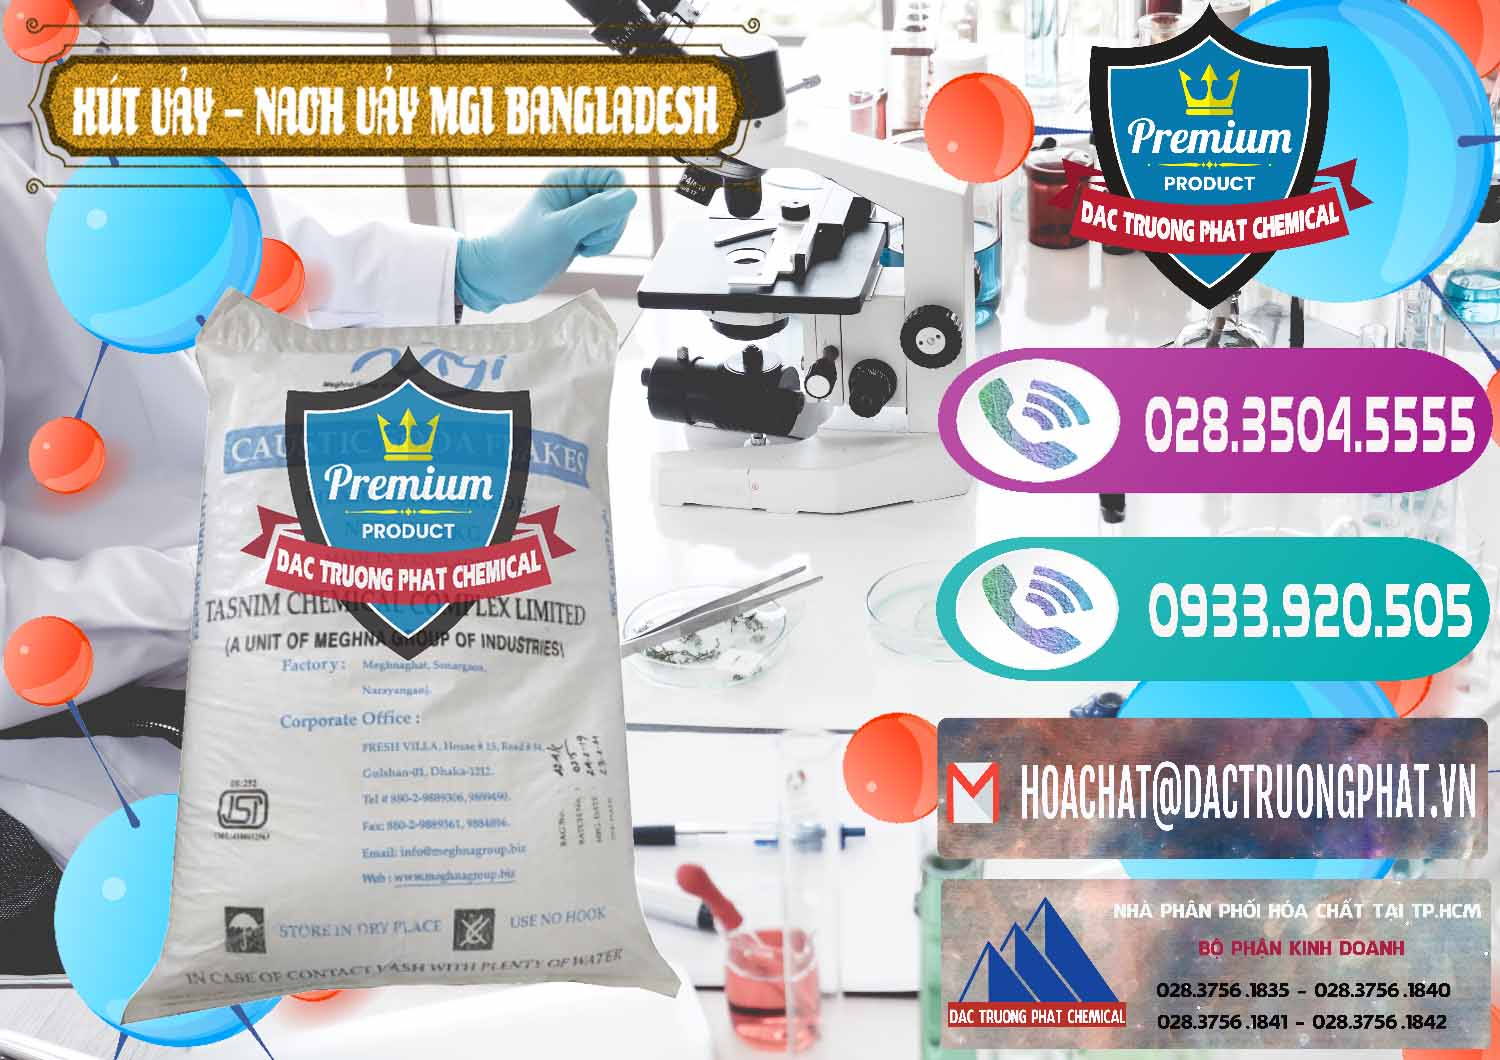 Công ty chuyên bán ( phân phối ) Xút Vảy - NaOH Vảy 99% MGI Bangladesh - 0274 - Nơi chuyên cung cấp _ kinh doanh hóa chất tại TP.HCM - hoachatxulynuoc.com